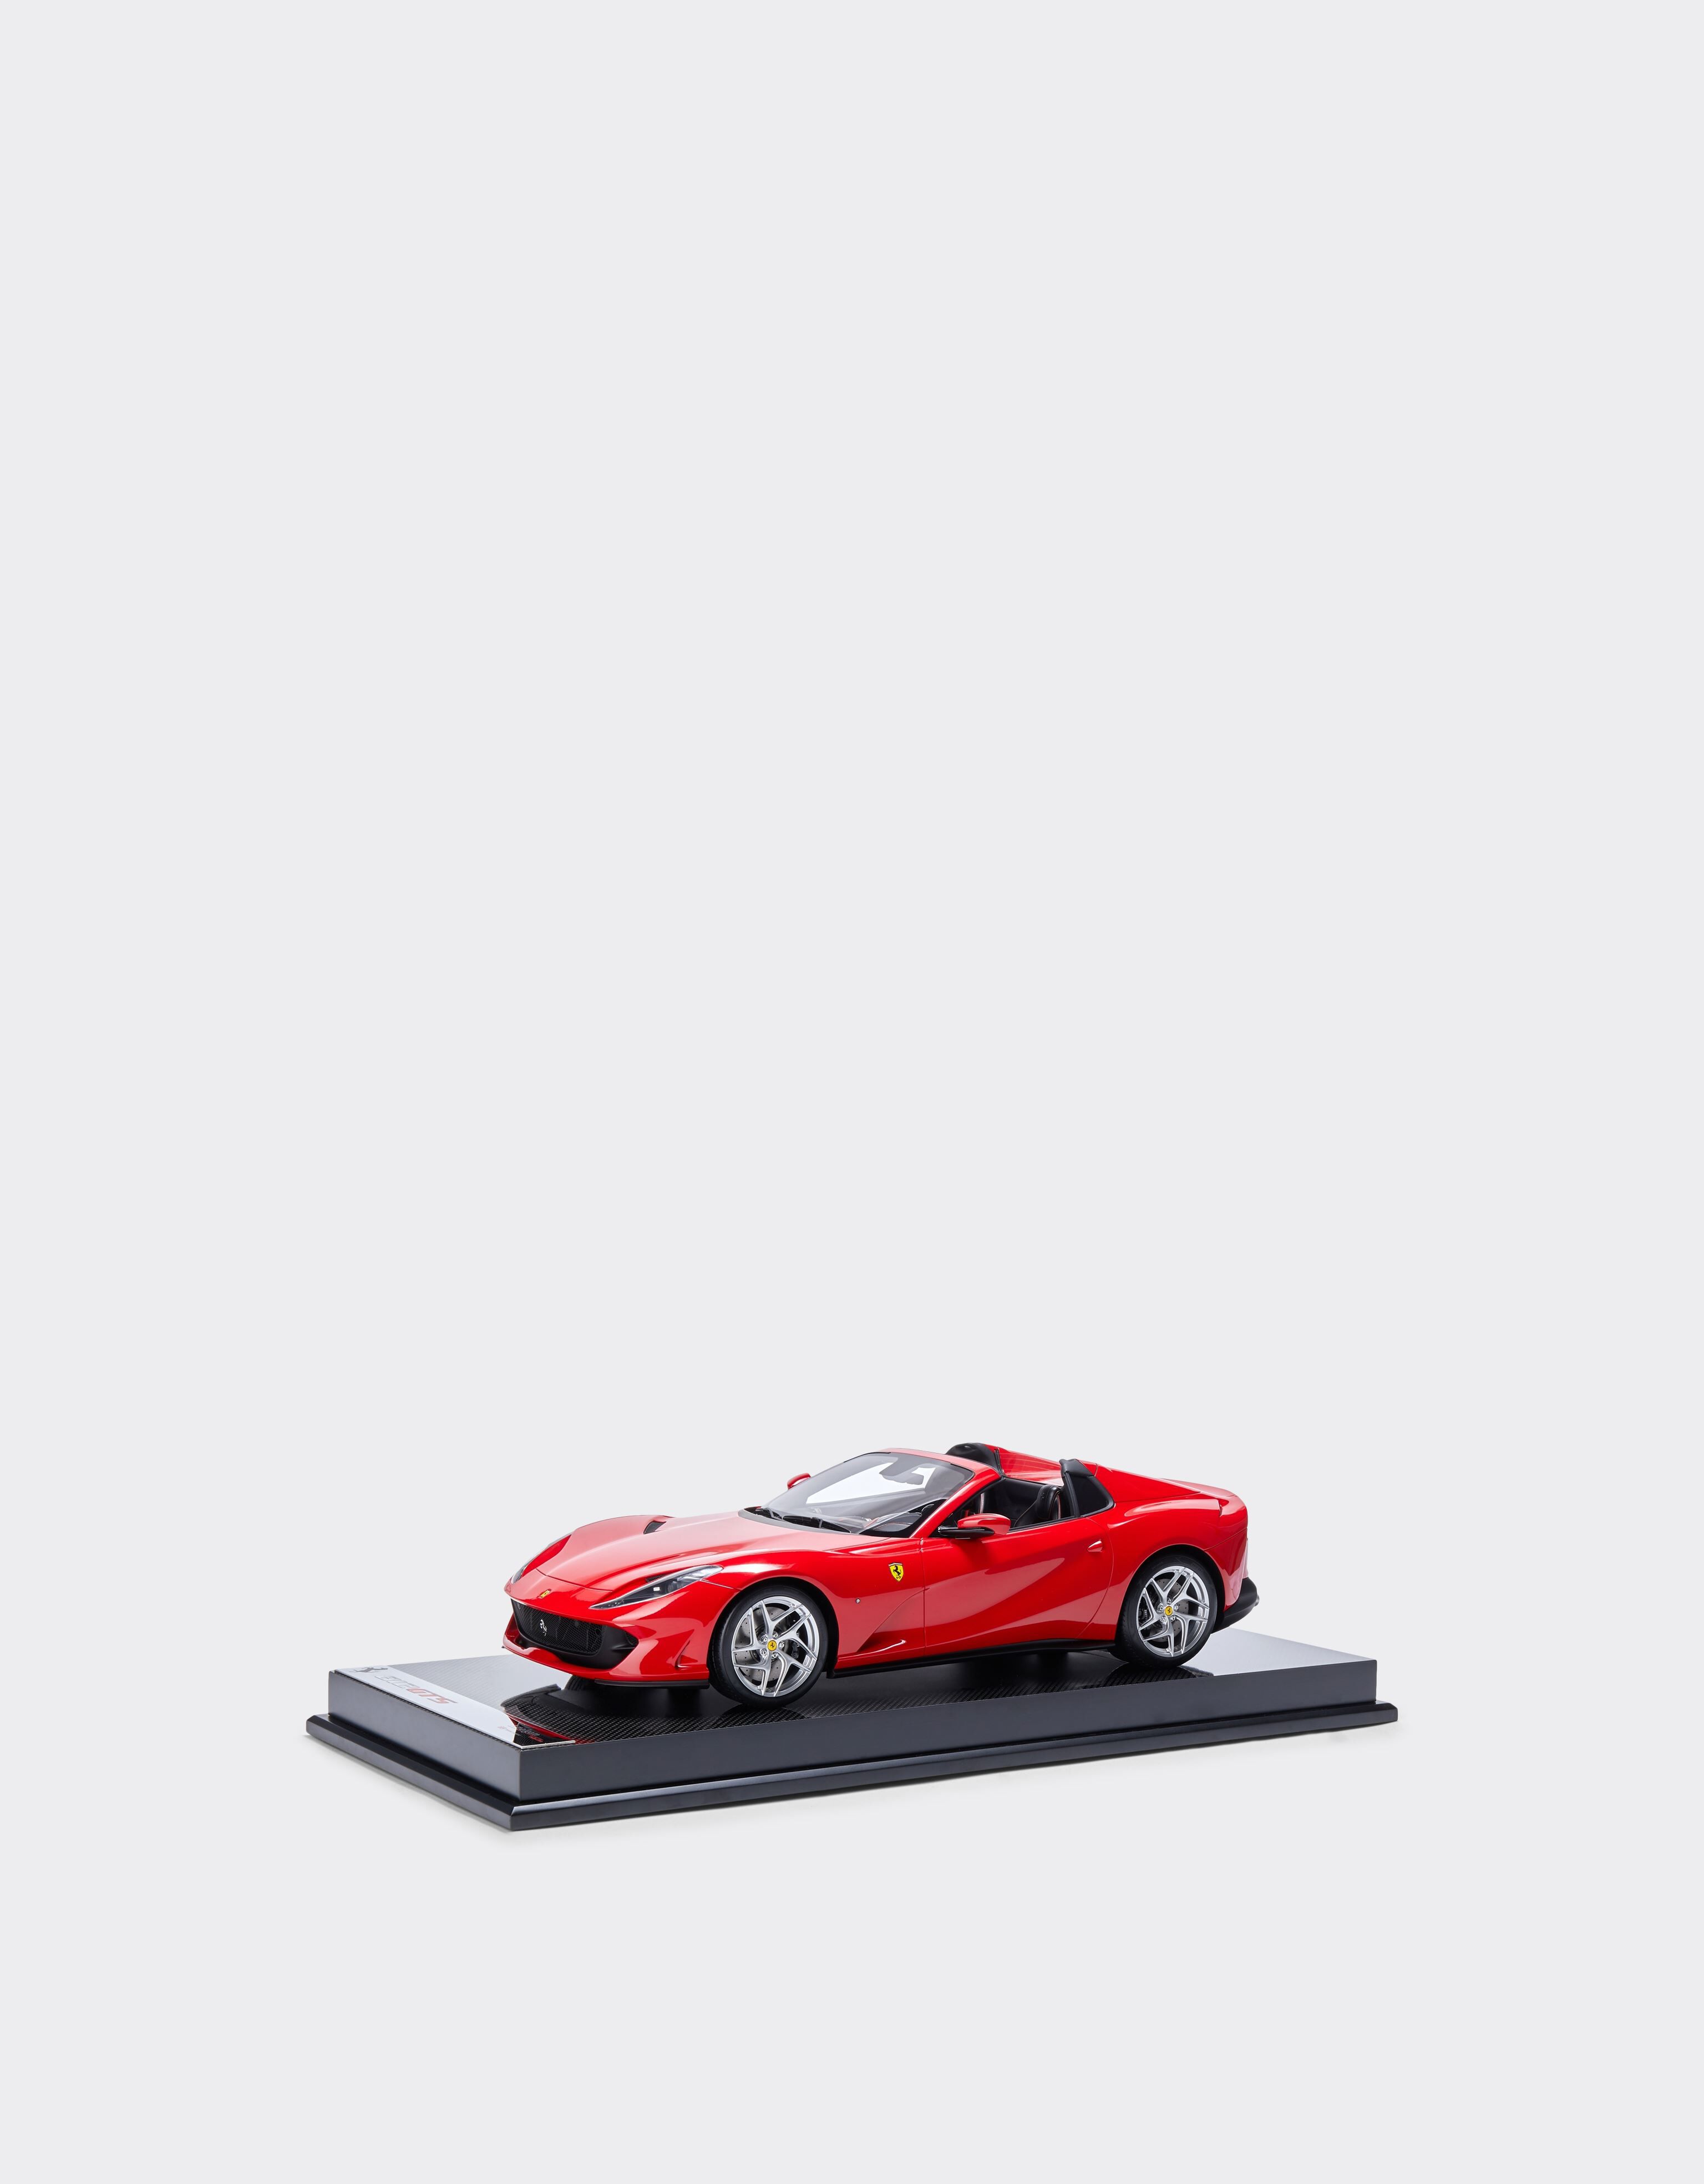 Ferrari Ferrari 812 Spider GTS モデルカー 1:12スケール レッド F0072f